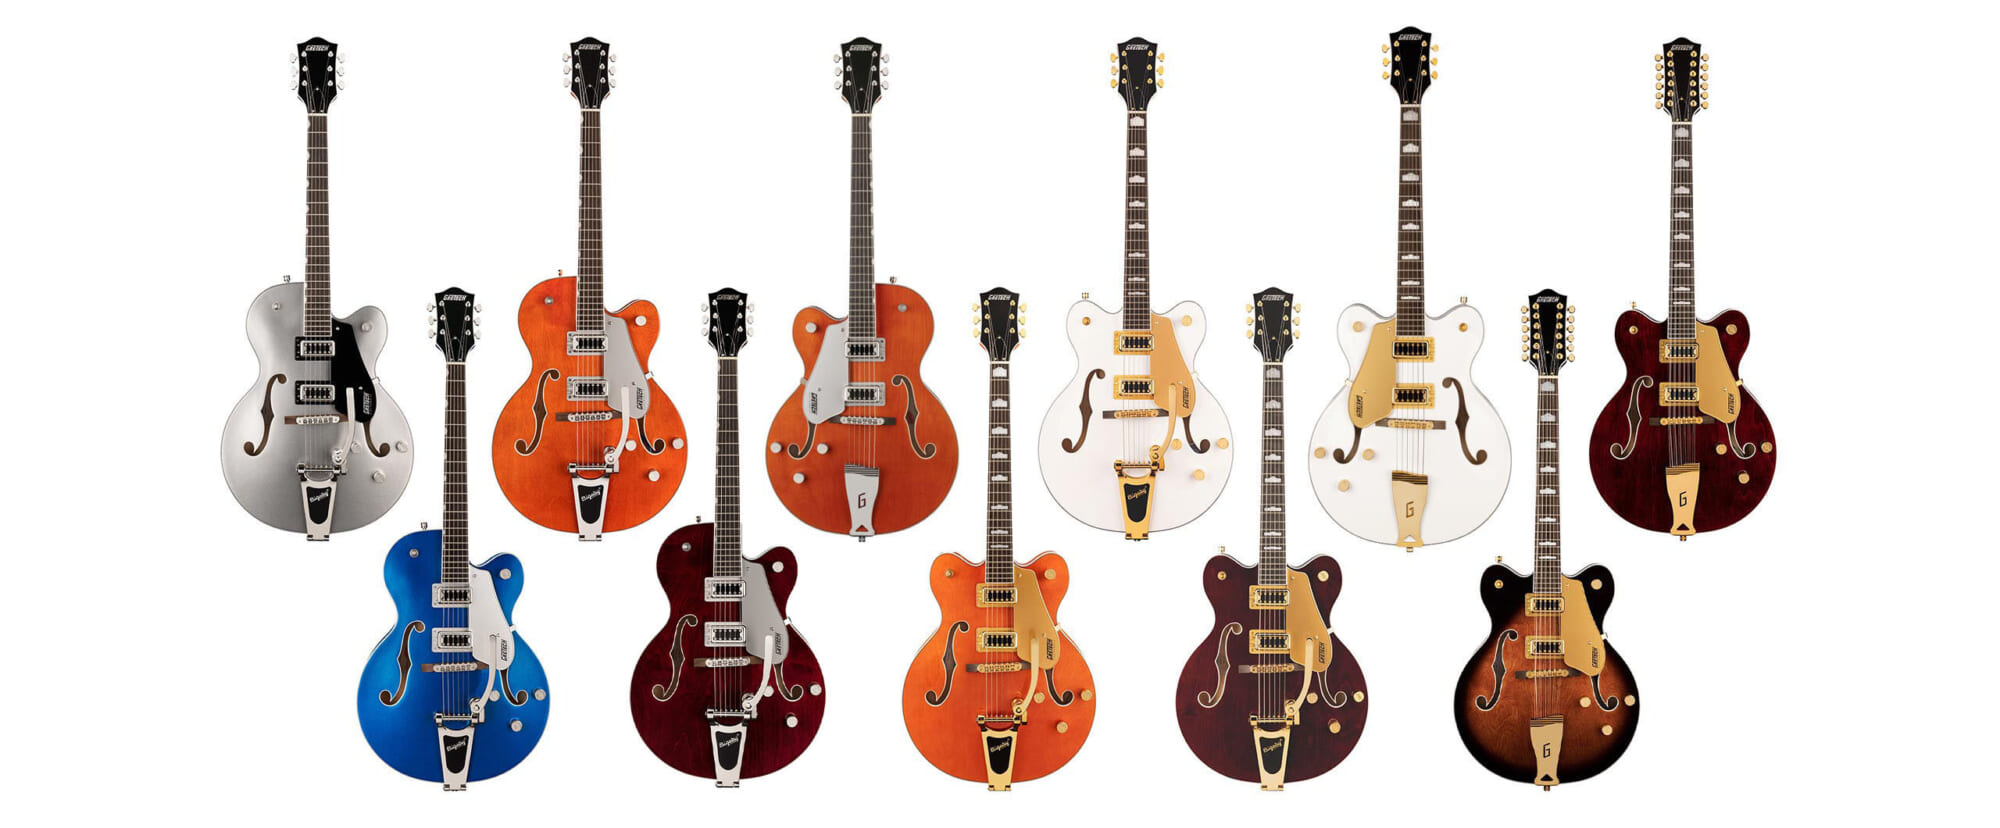 グレッチのエレクトロマチック・コレクションより、ホロウ・ボディ・ギターの新製品5モデルが登場